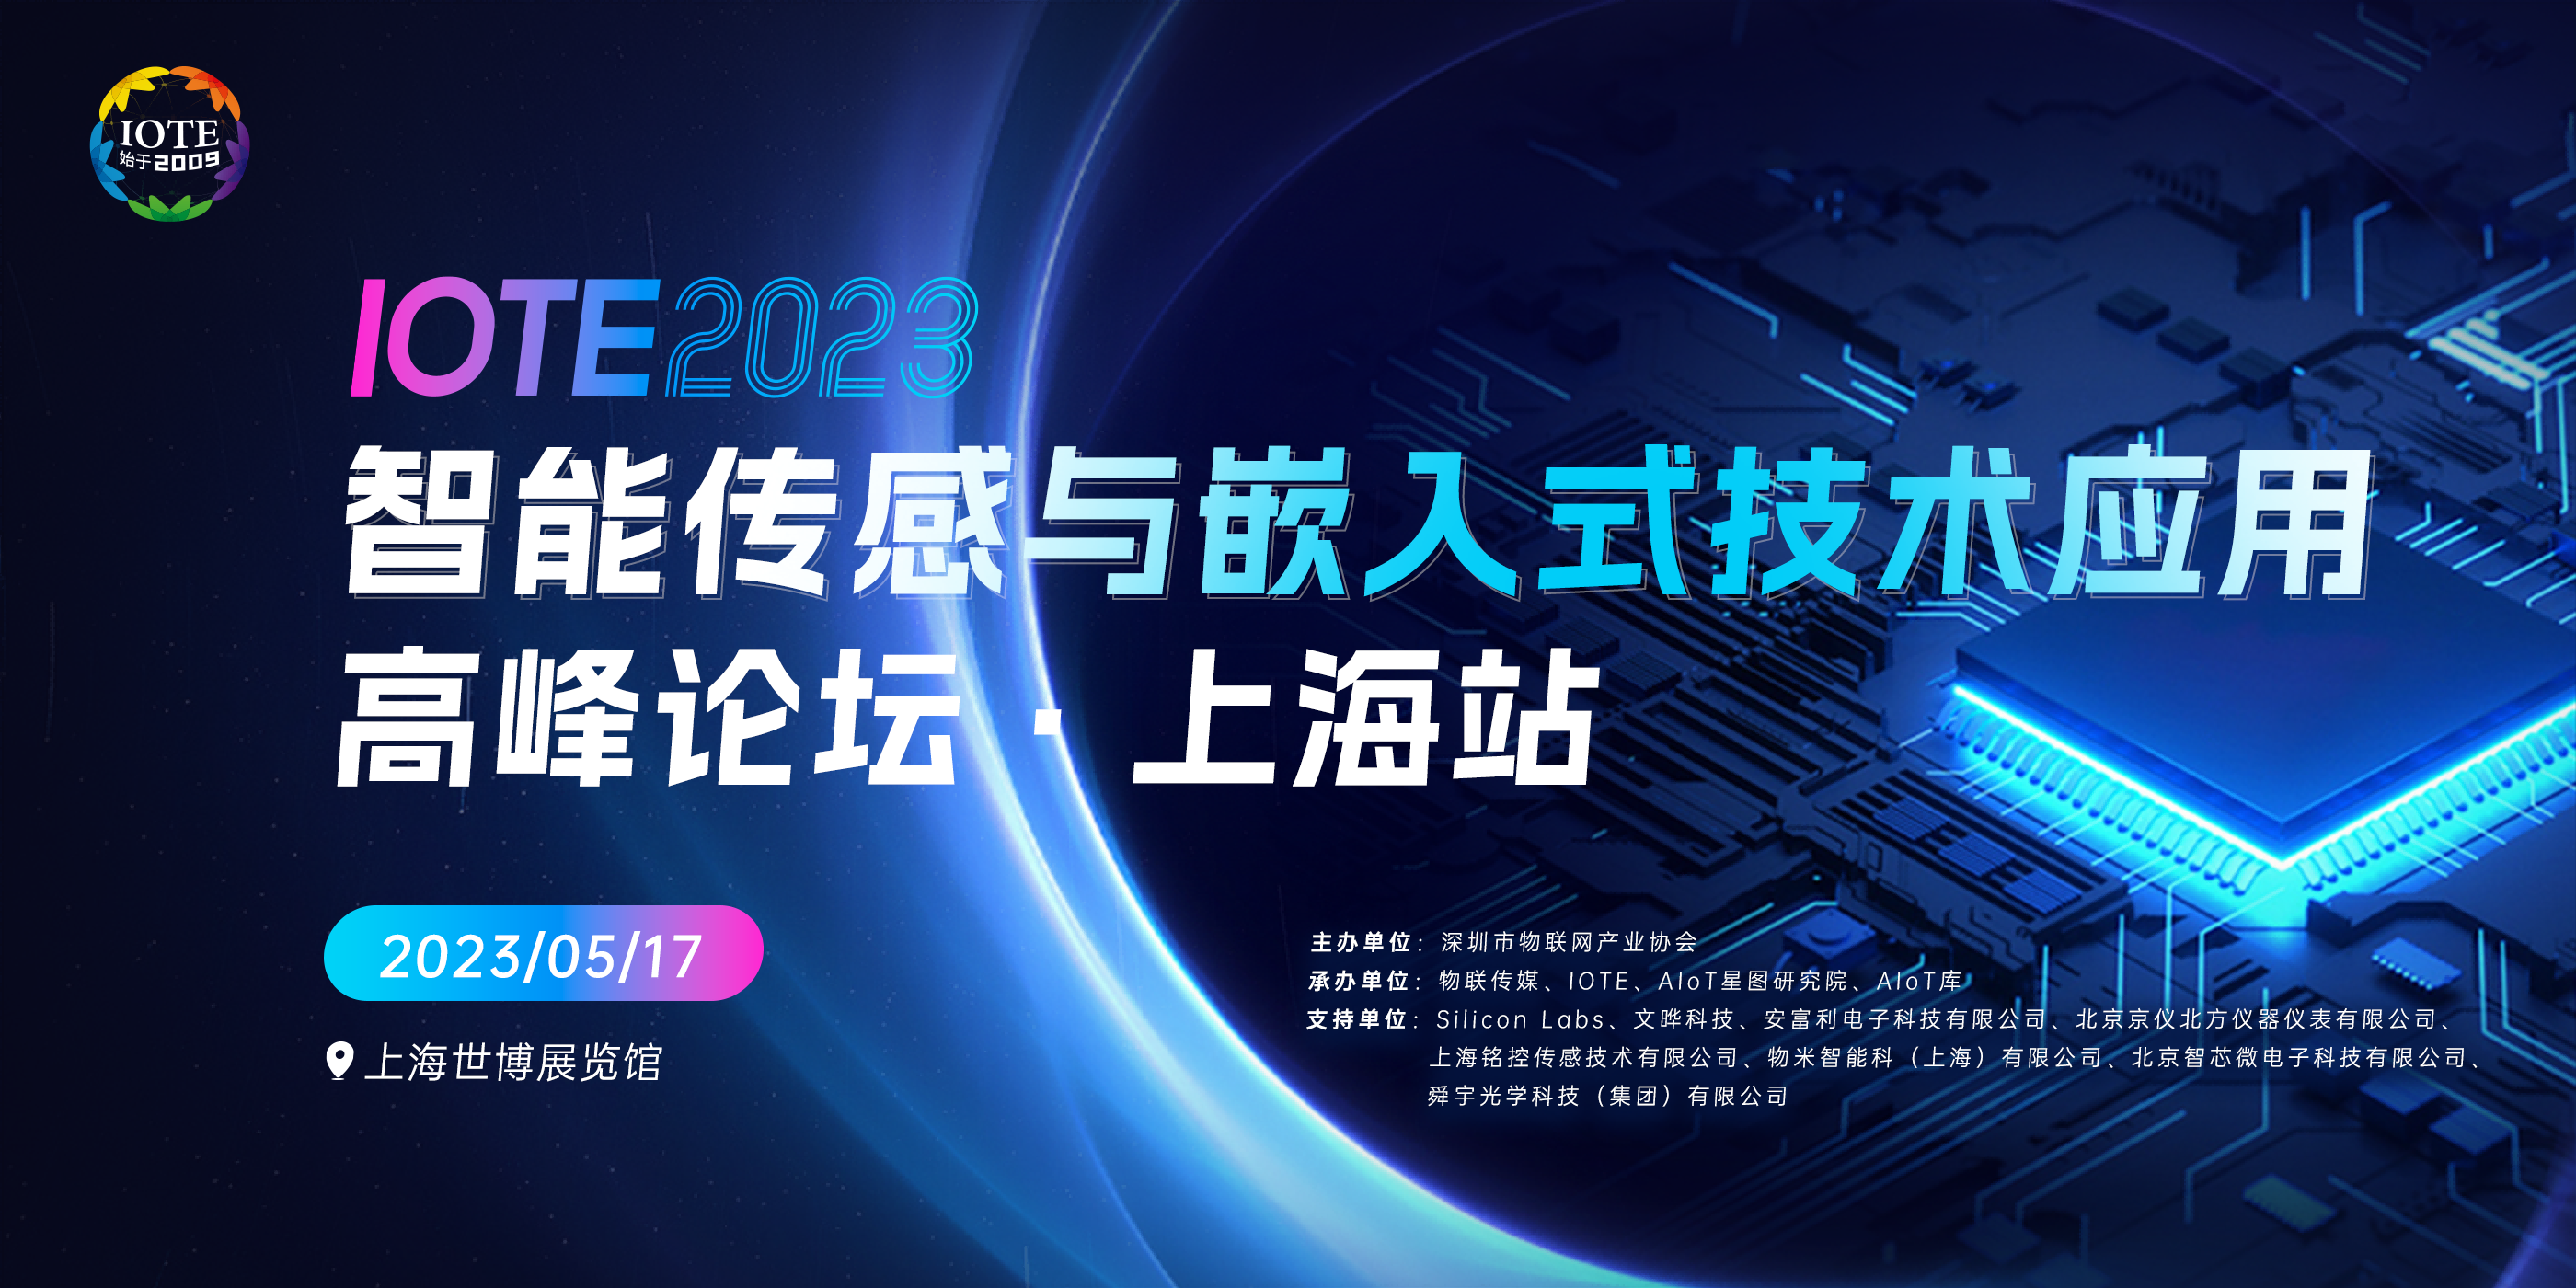 IOTE 2023上海•智能传感与嵌入式技术应用高峰论坛--IOTE物联网展